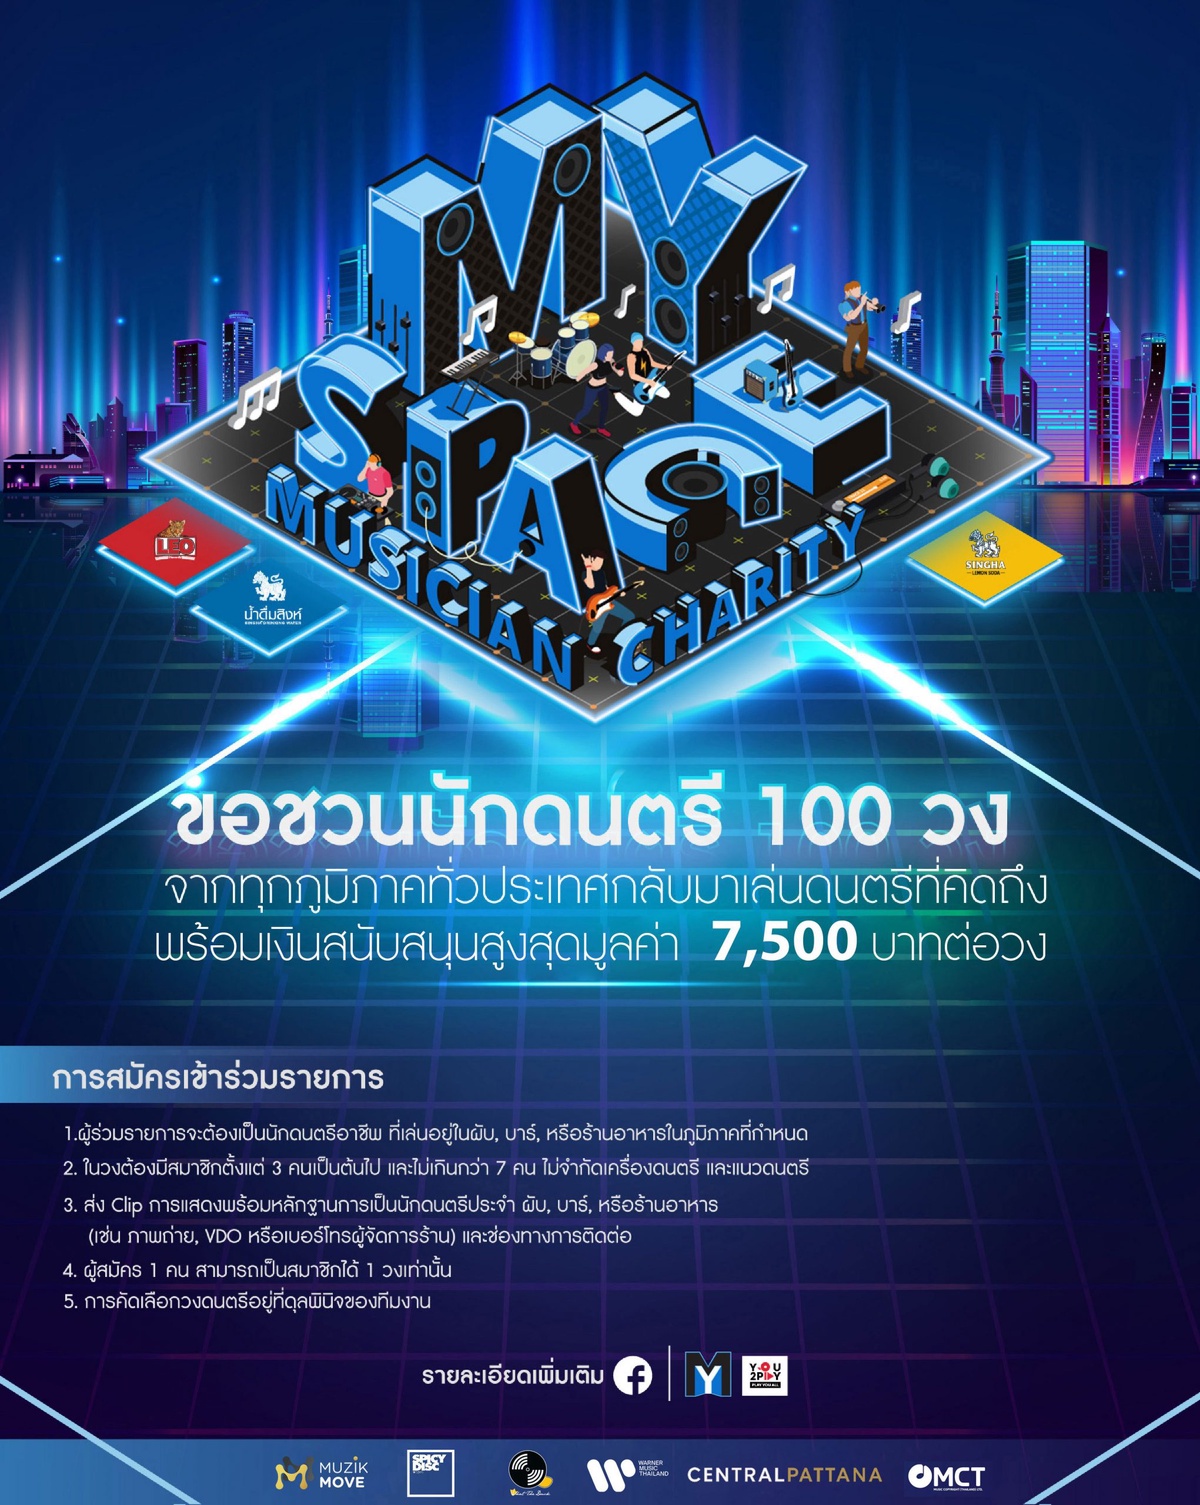 เซ็นทรัลพัฒนา จับมือ MY Space You2Play Music Copyright (Thailand) และค่ายเพลงชั้นนำของไทย ร่วมส่งต่อพลังบวกช่วยเหลือกลุ่มนักดนตรีที่ได้รับผลกระทบจากโควิด-19 ในแคมเปญ MY Space Musician